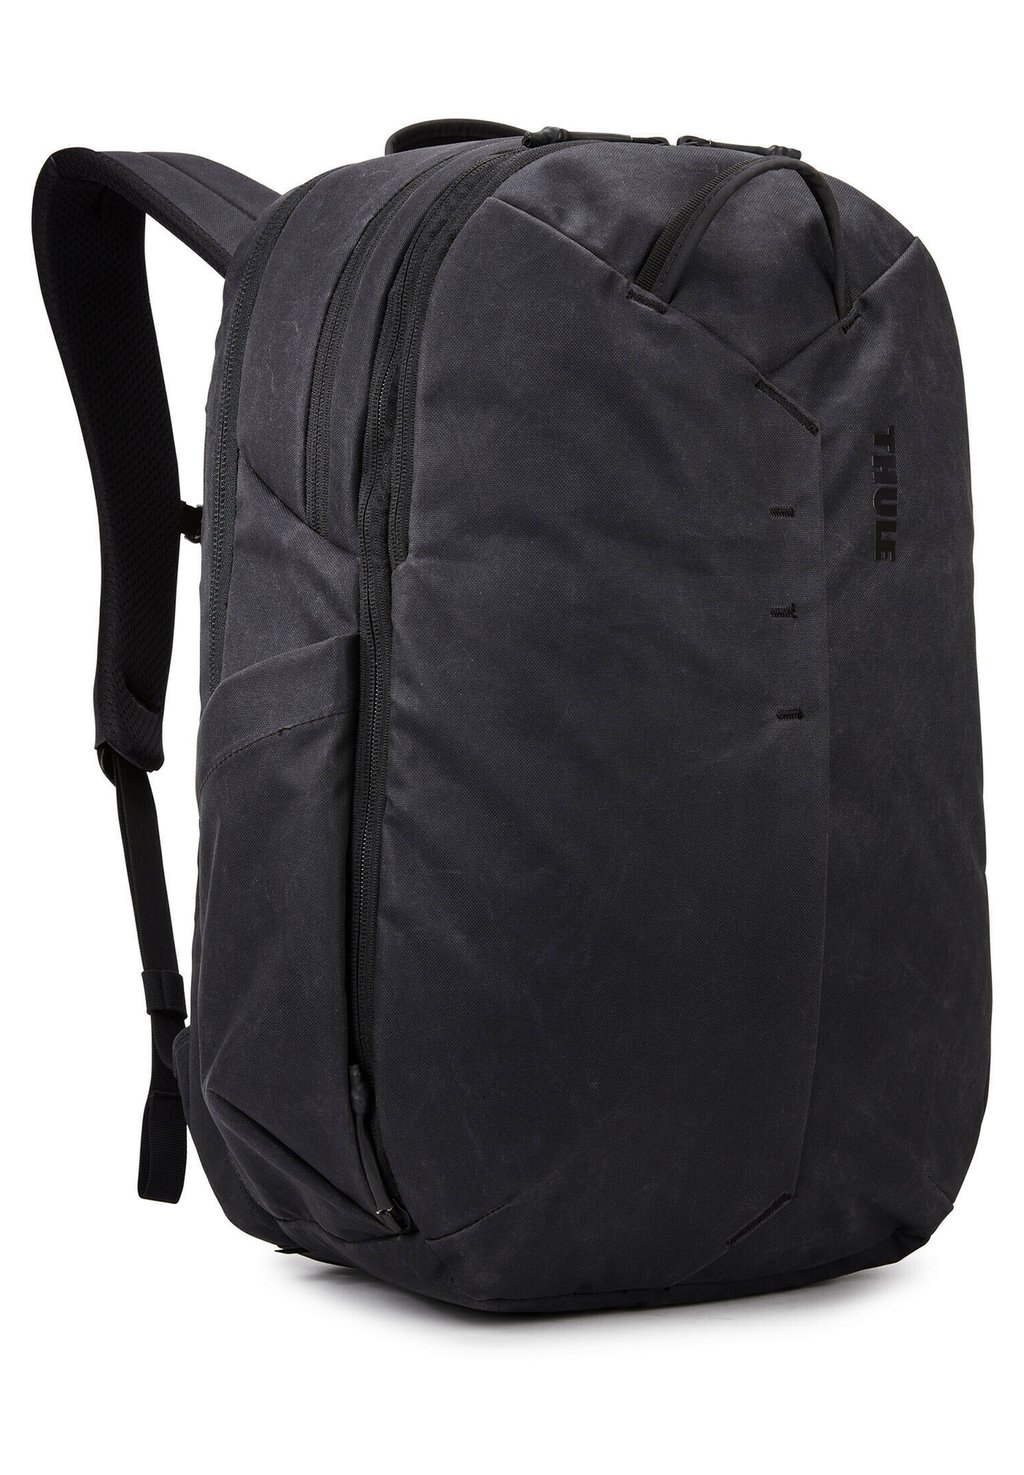 Рюкзак AION TRAVEL BACKPACK 28L Thule, цвет black рюкзак thule aion travel backpack 28l tatb128 black